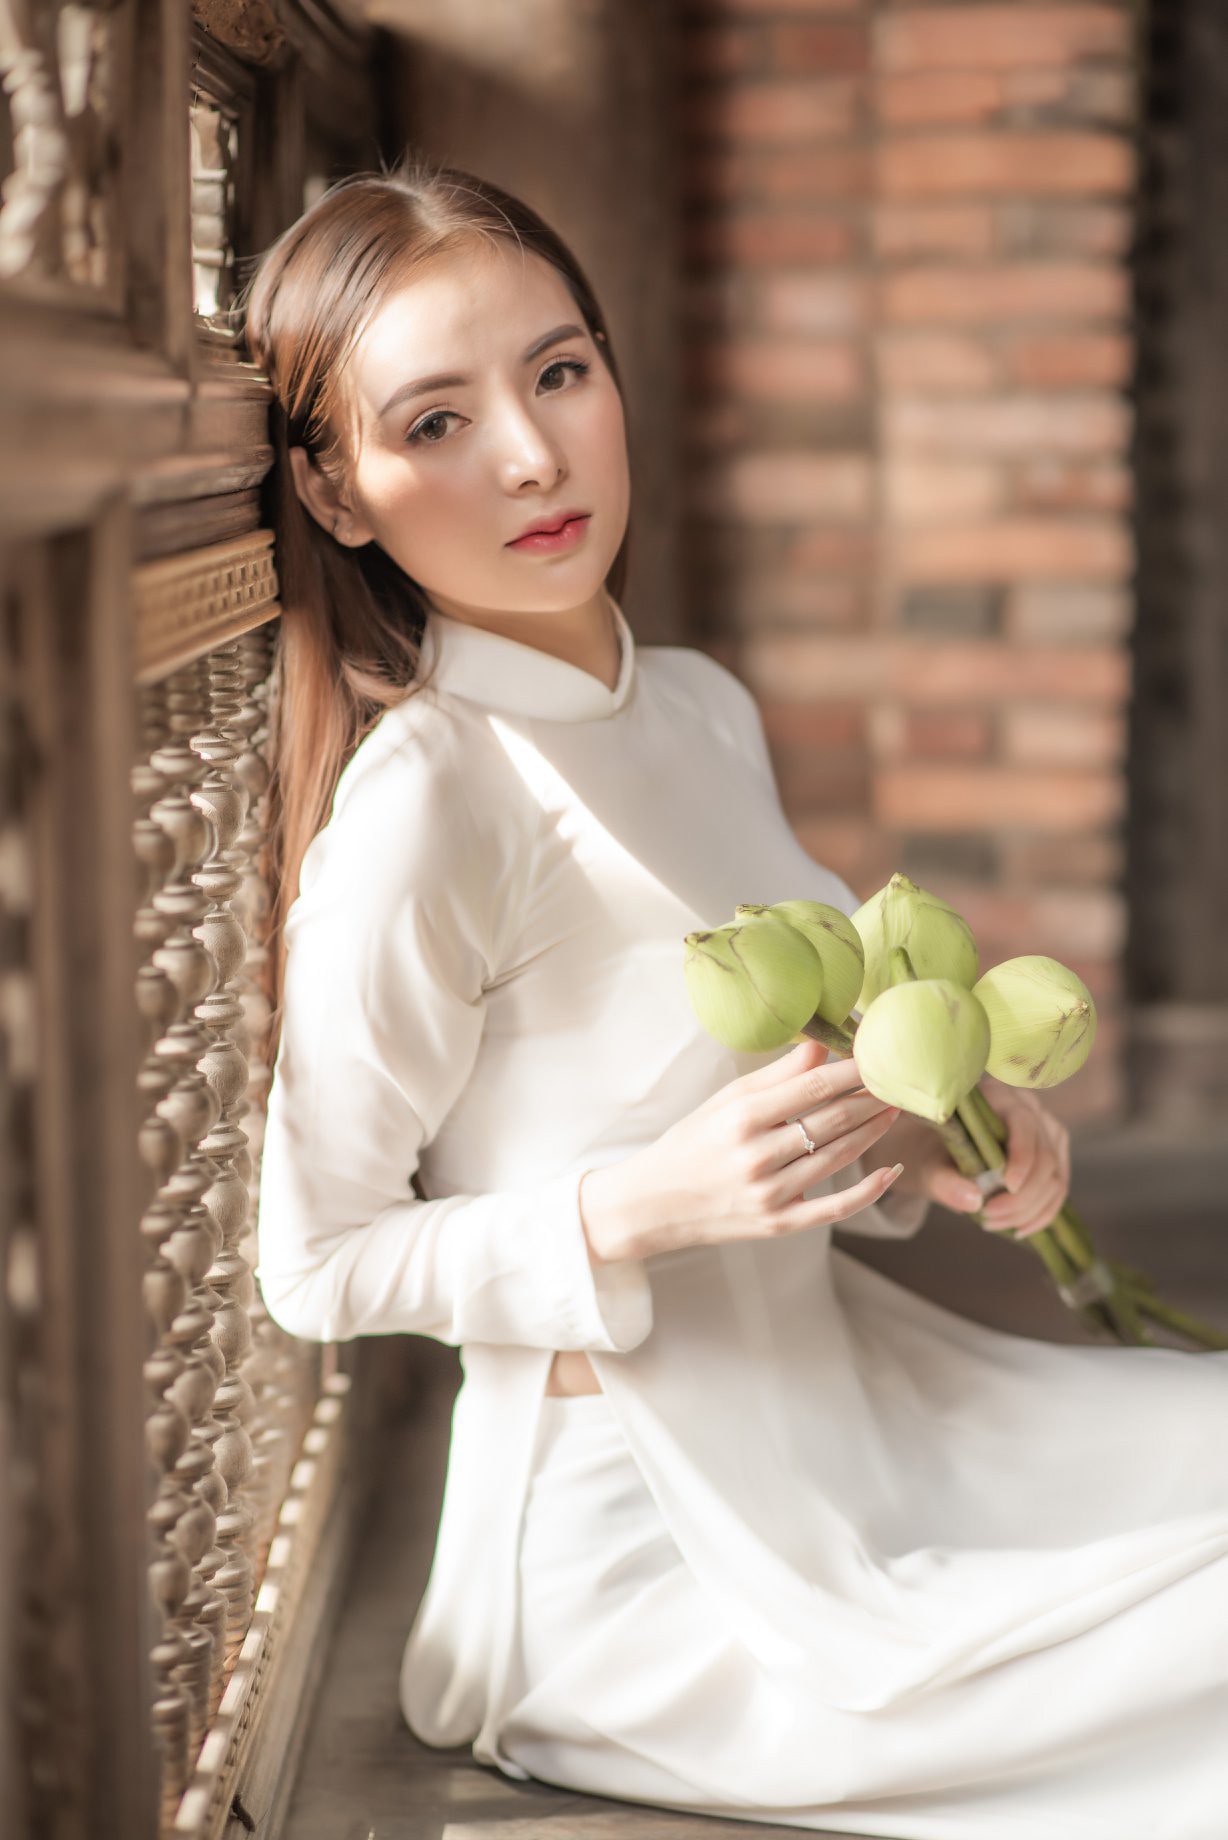 Đến với hình ảnh áo dài trắng, bạn sẽ cảm nhận được vẻ đẹp tinh khôi và thanh thoát của trang phục truyền thống Việt Nam. Áo dài trắng mang đến cho người mặc sự tinh tế, trang nhã và vô cùng sang trọng. Hãy khám phá sự trầm tư và duyên dáng của áo dài trắng qua hình ảnh đang chờ đón bạn.